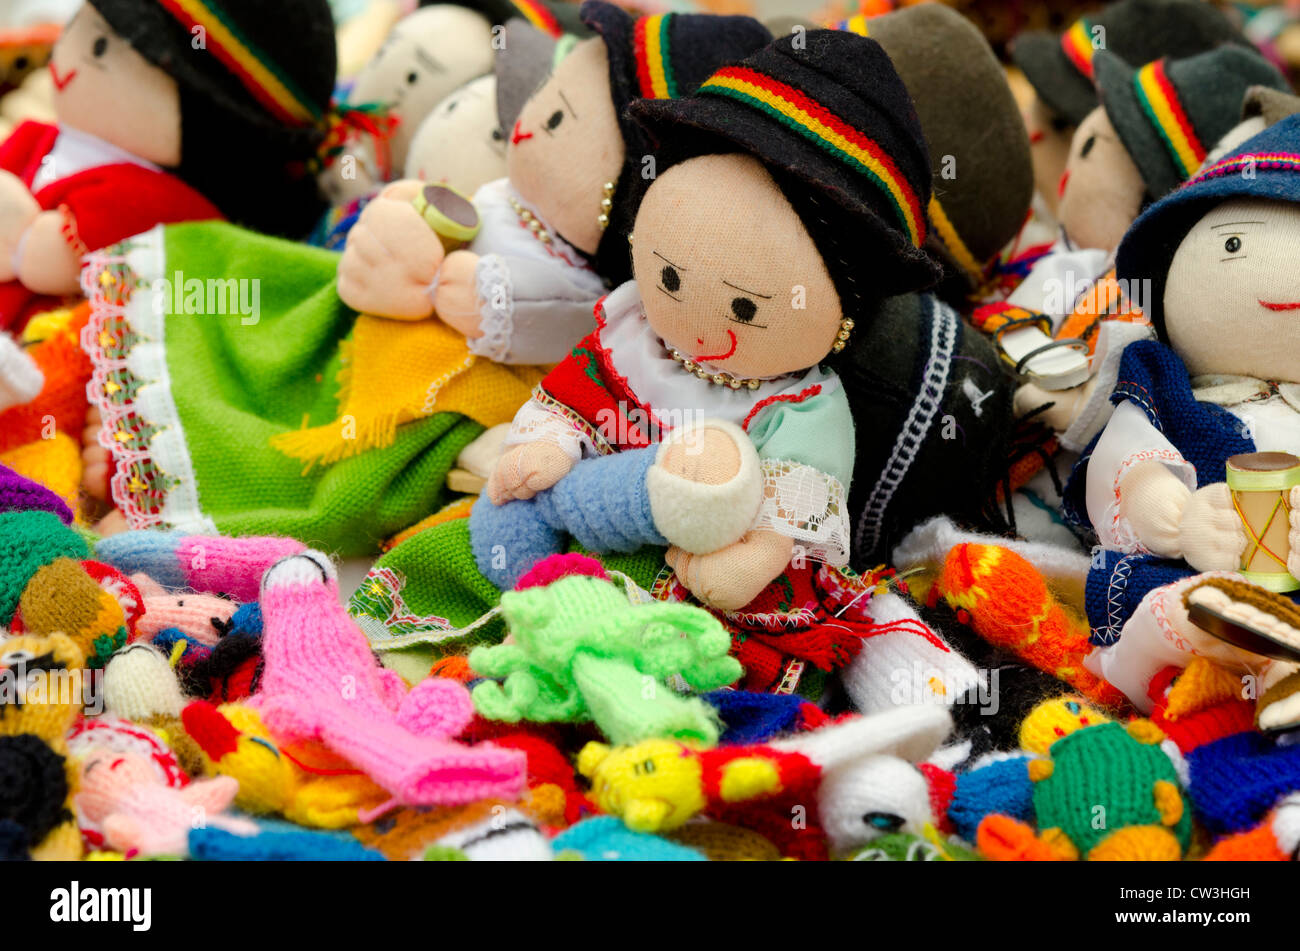 L'Equateur, Quito. Marché artisanal d'Otavalo. Textile fait main traditionnel typique des poupées en costume des Highlands. Banque D'Images